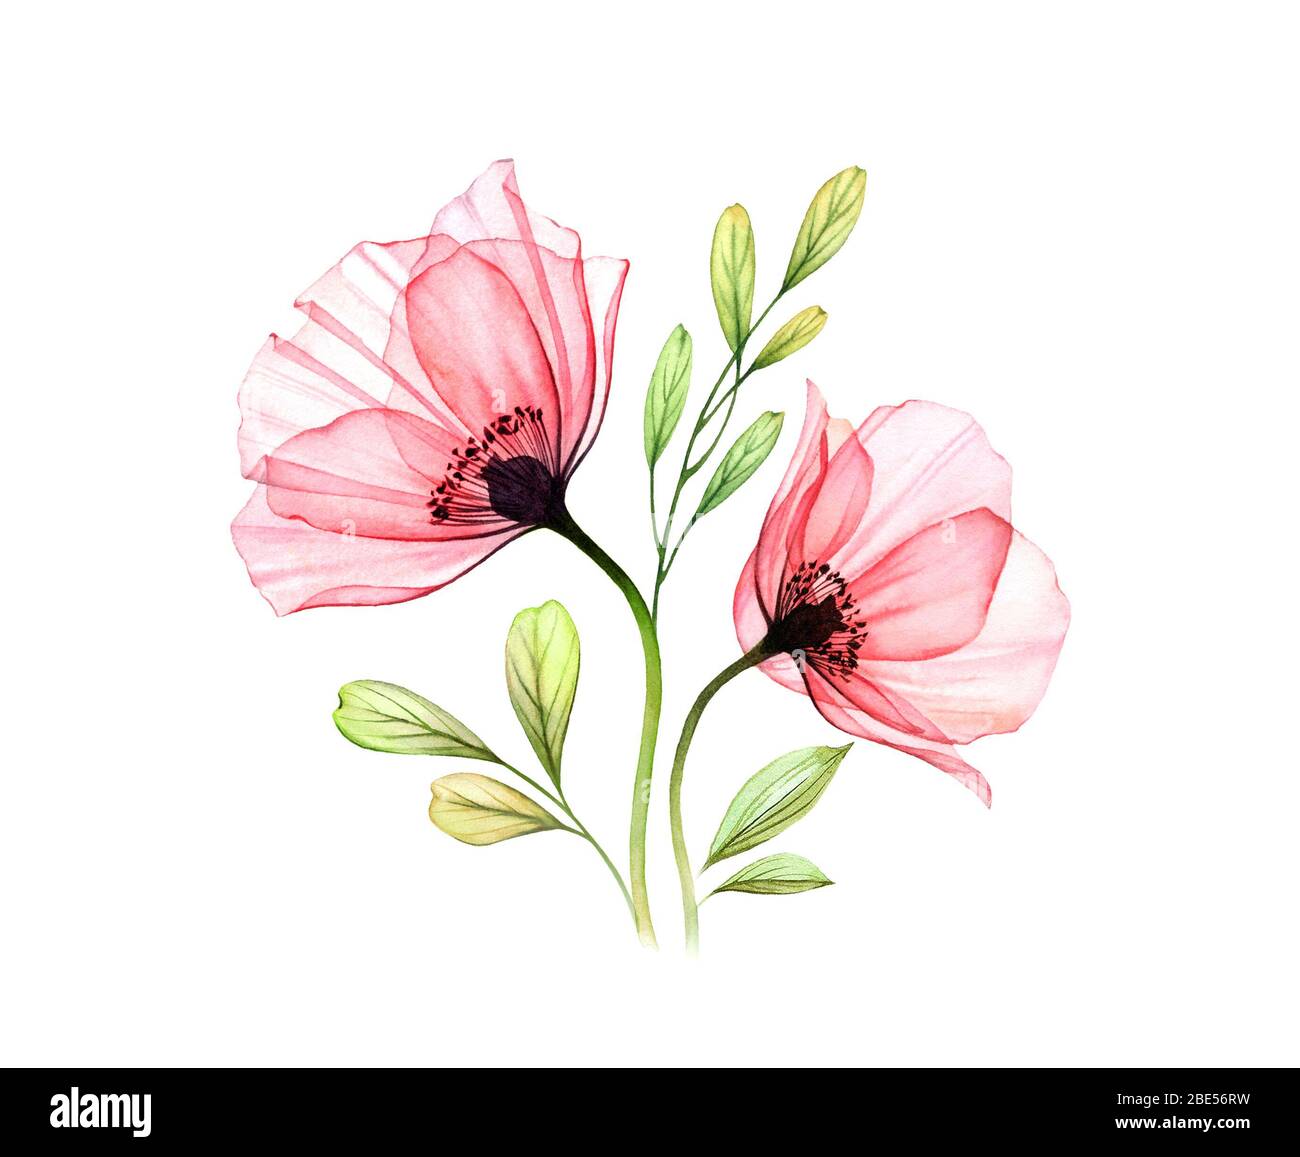 Wasserfarbener Mohn-Bouquet. Zwei rote Blüten mit auf Weiß isolierten Blättern. Handbemalte Illustration mit detaillierten Blütenblättern. Botanische Illustration für Stockfoto